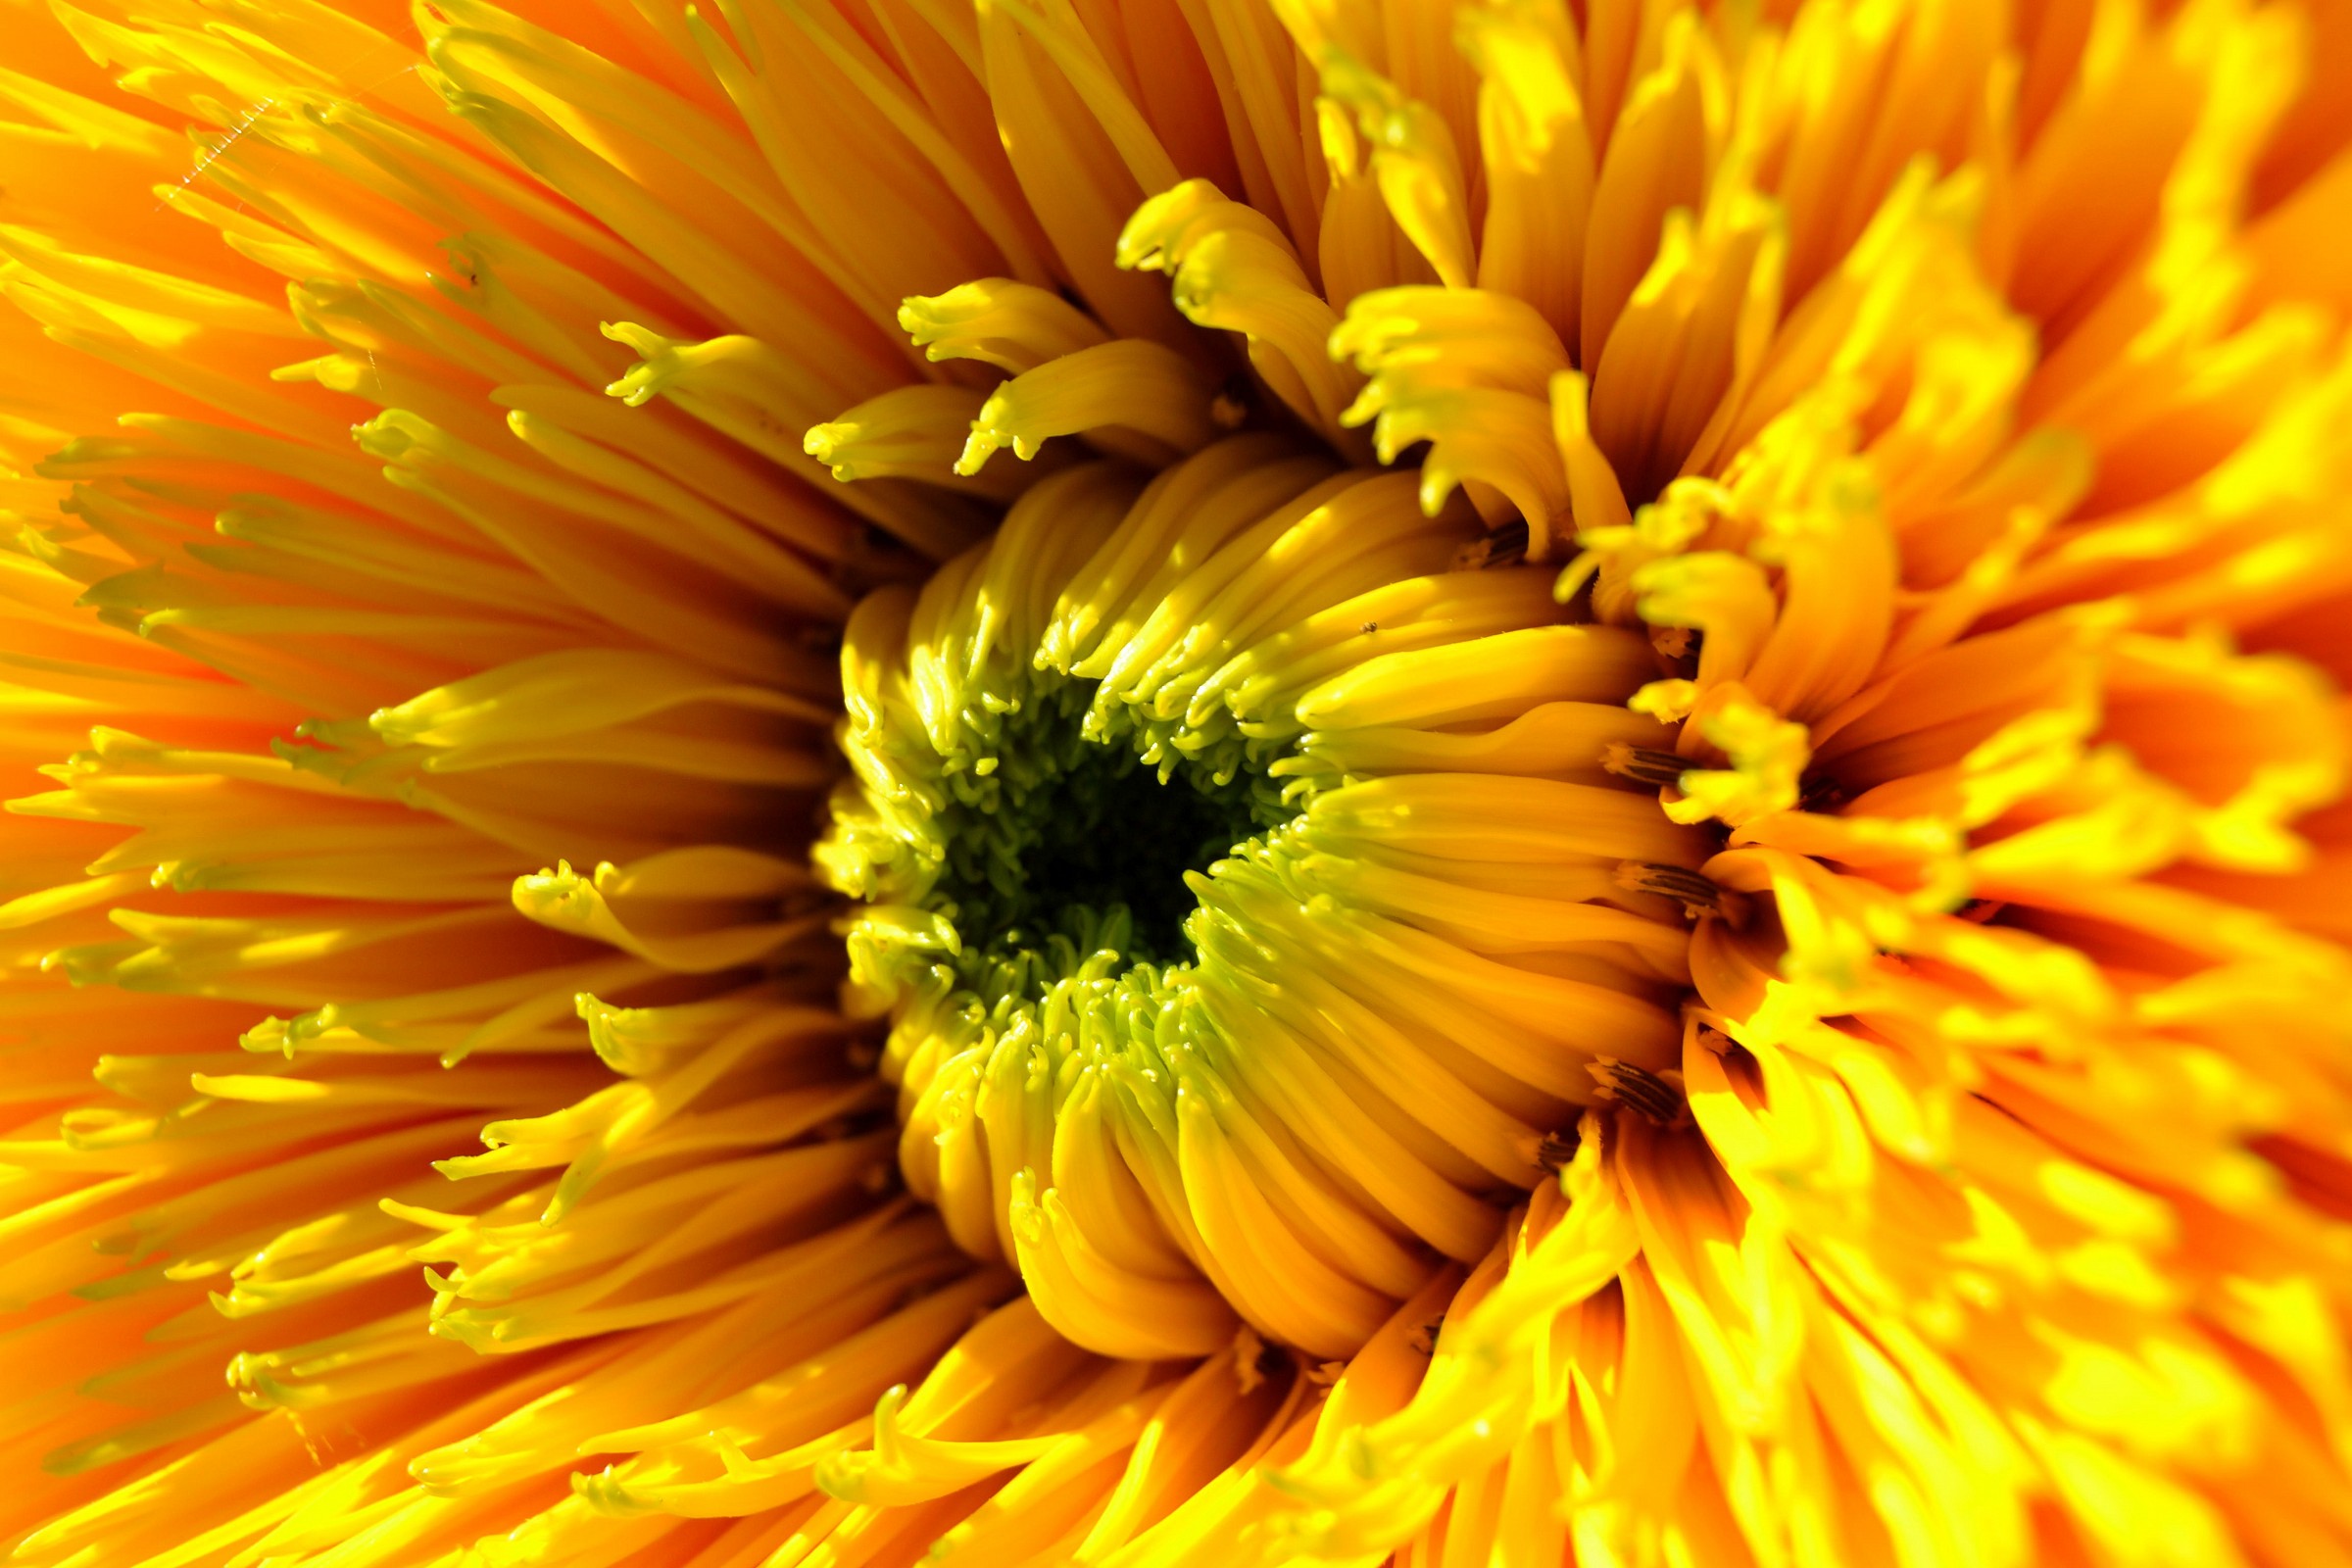 Heart of sunflower...